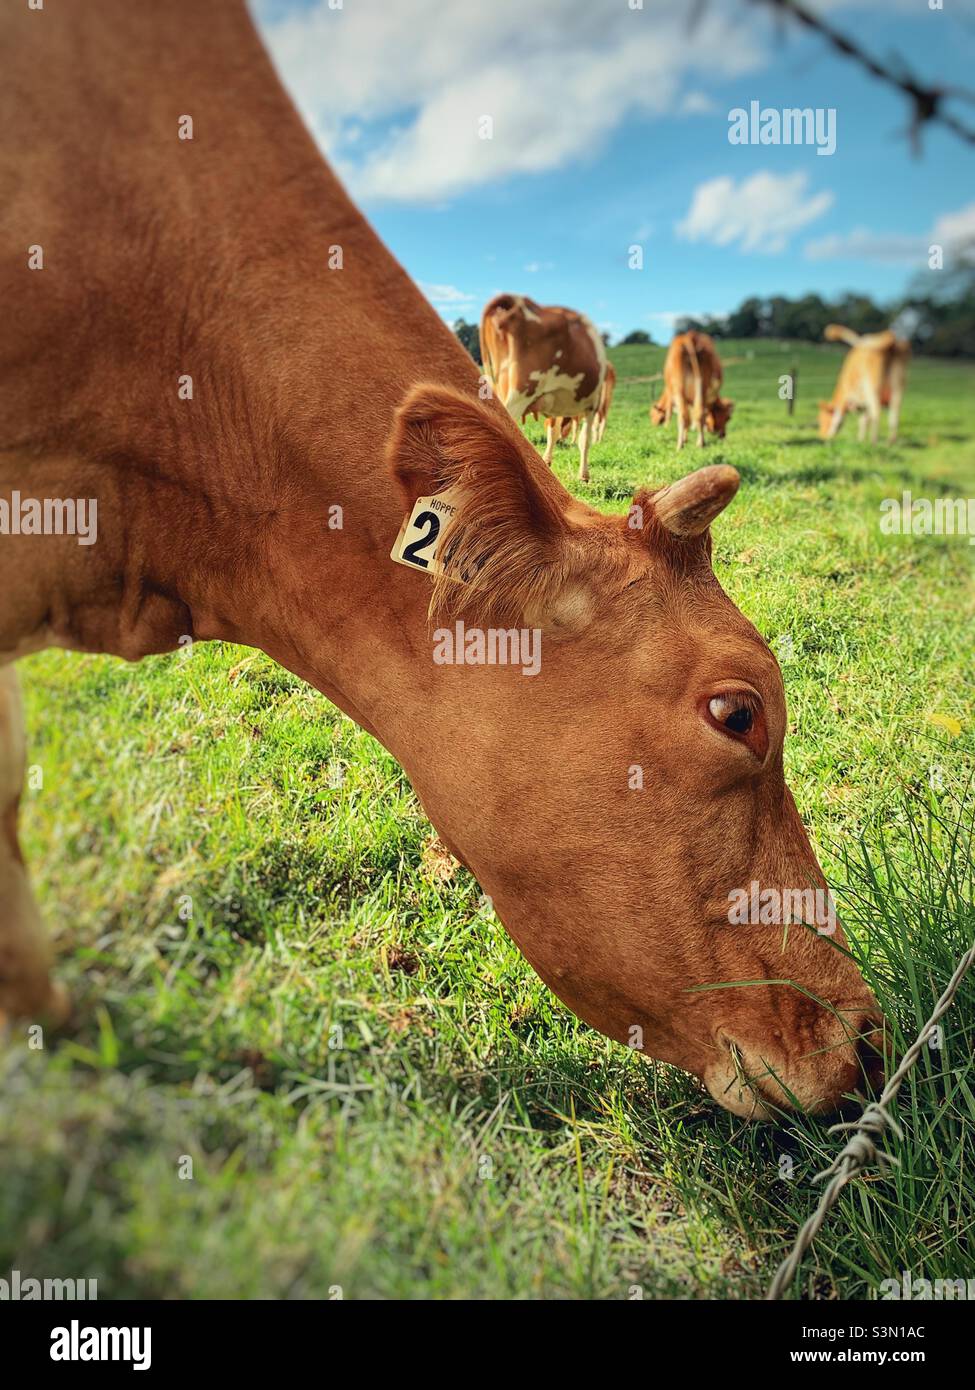 Vache brune mangeant de l'herbe dans une ferme australienne Banque D'Images